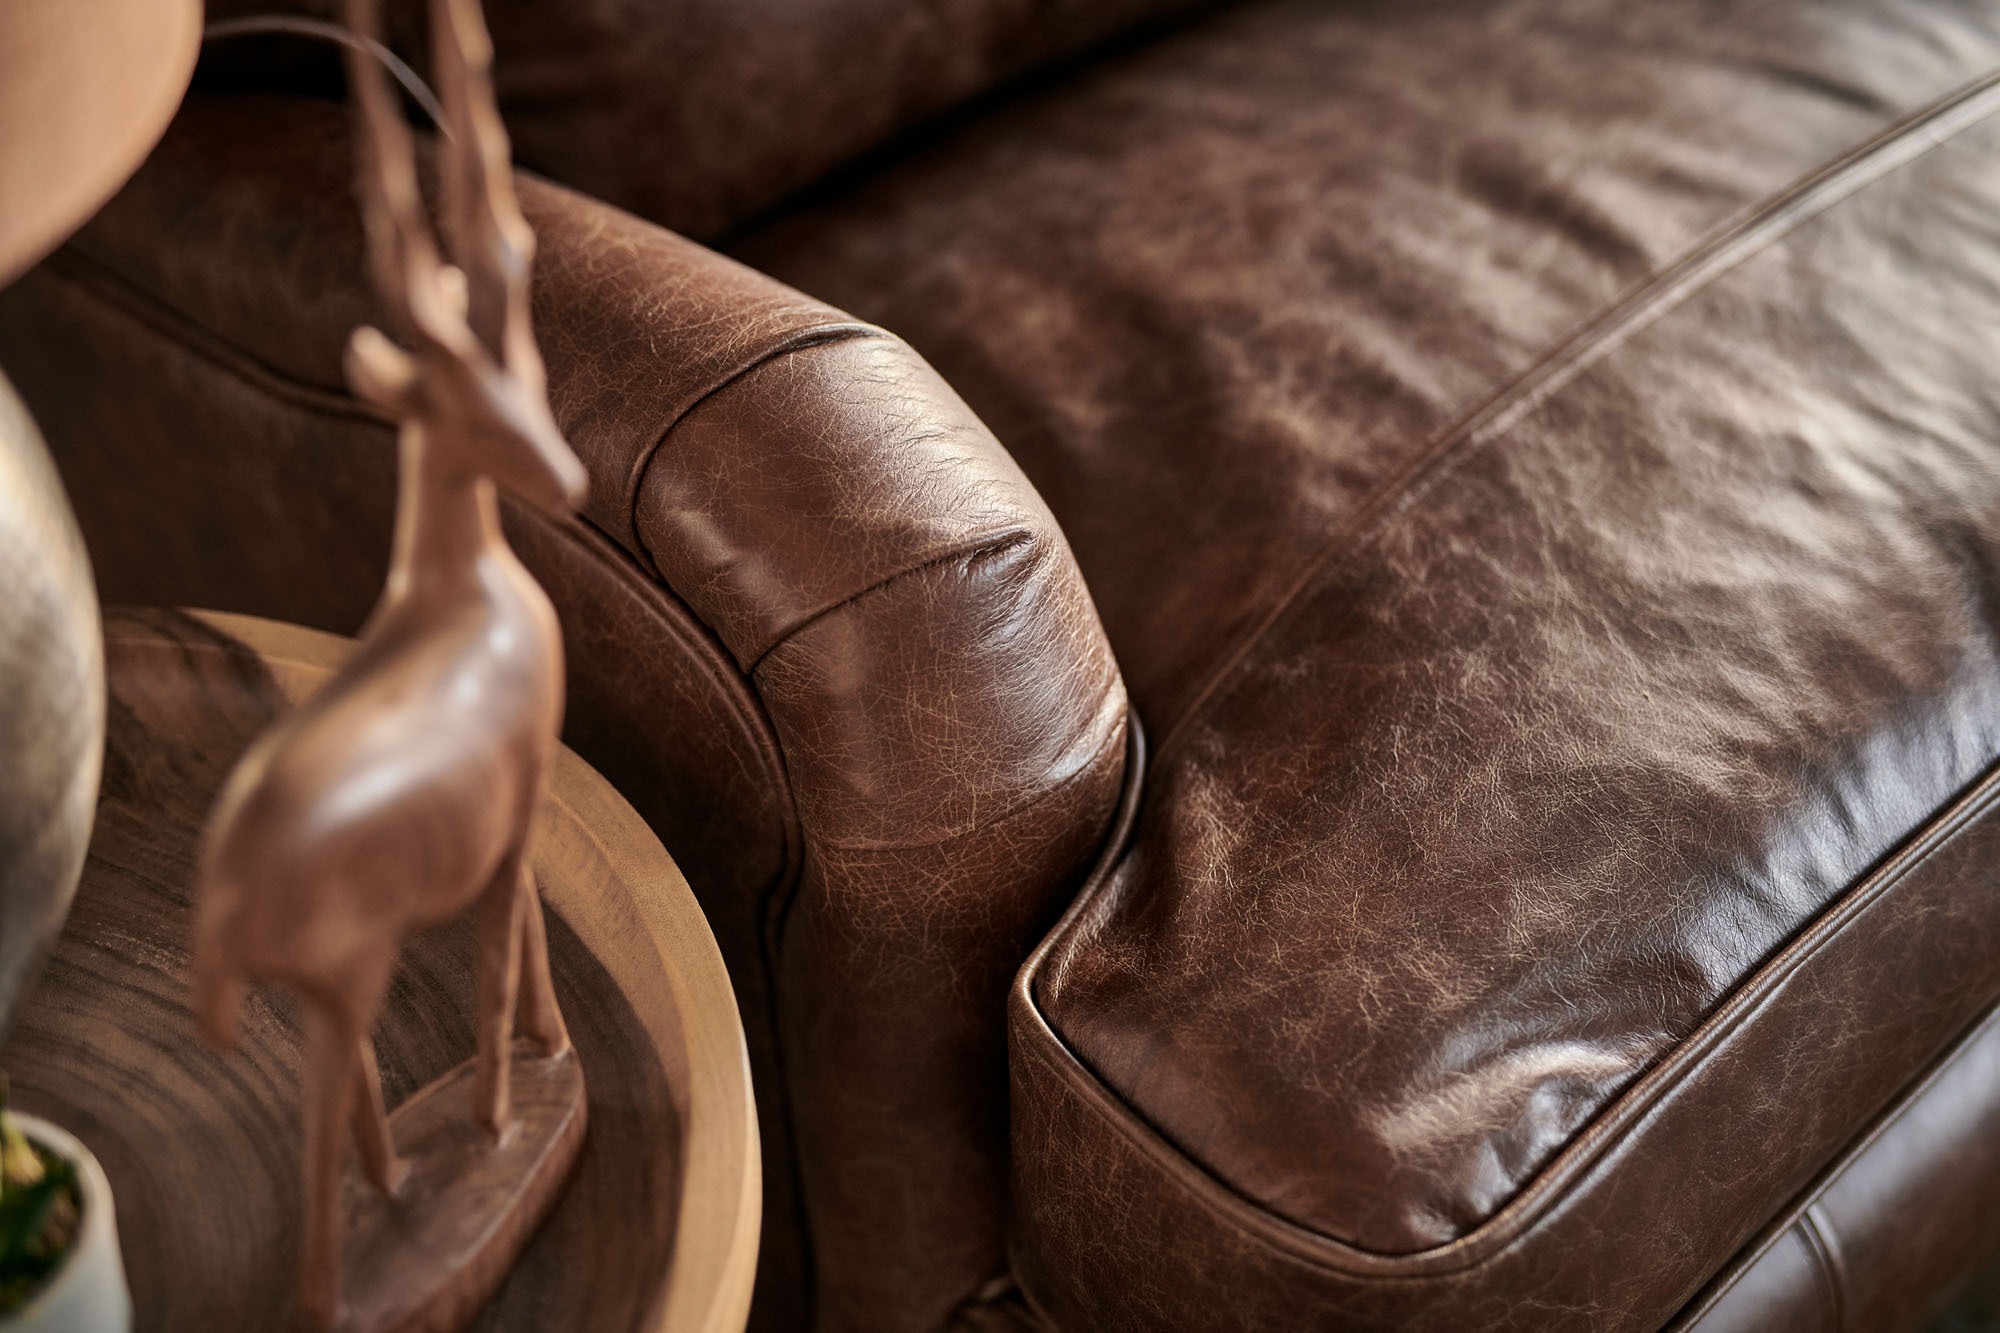 Duke 3 Seater Leather Sofa